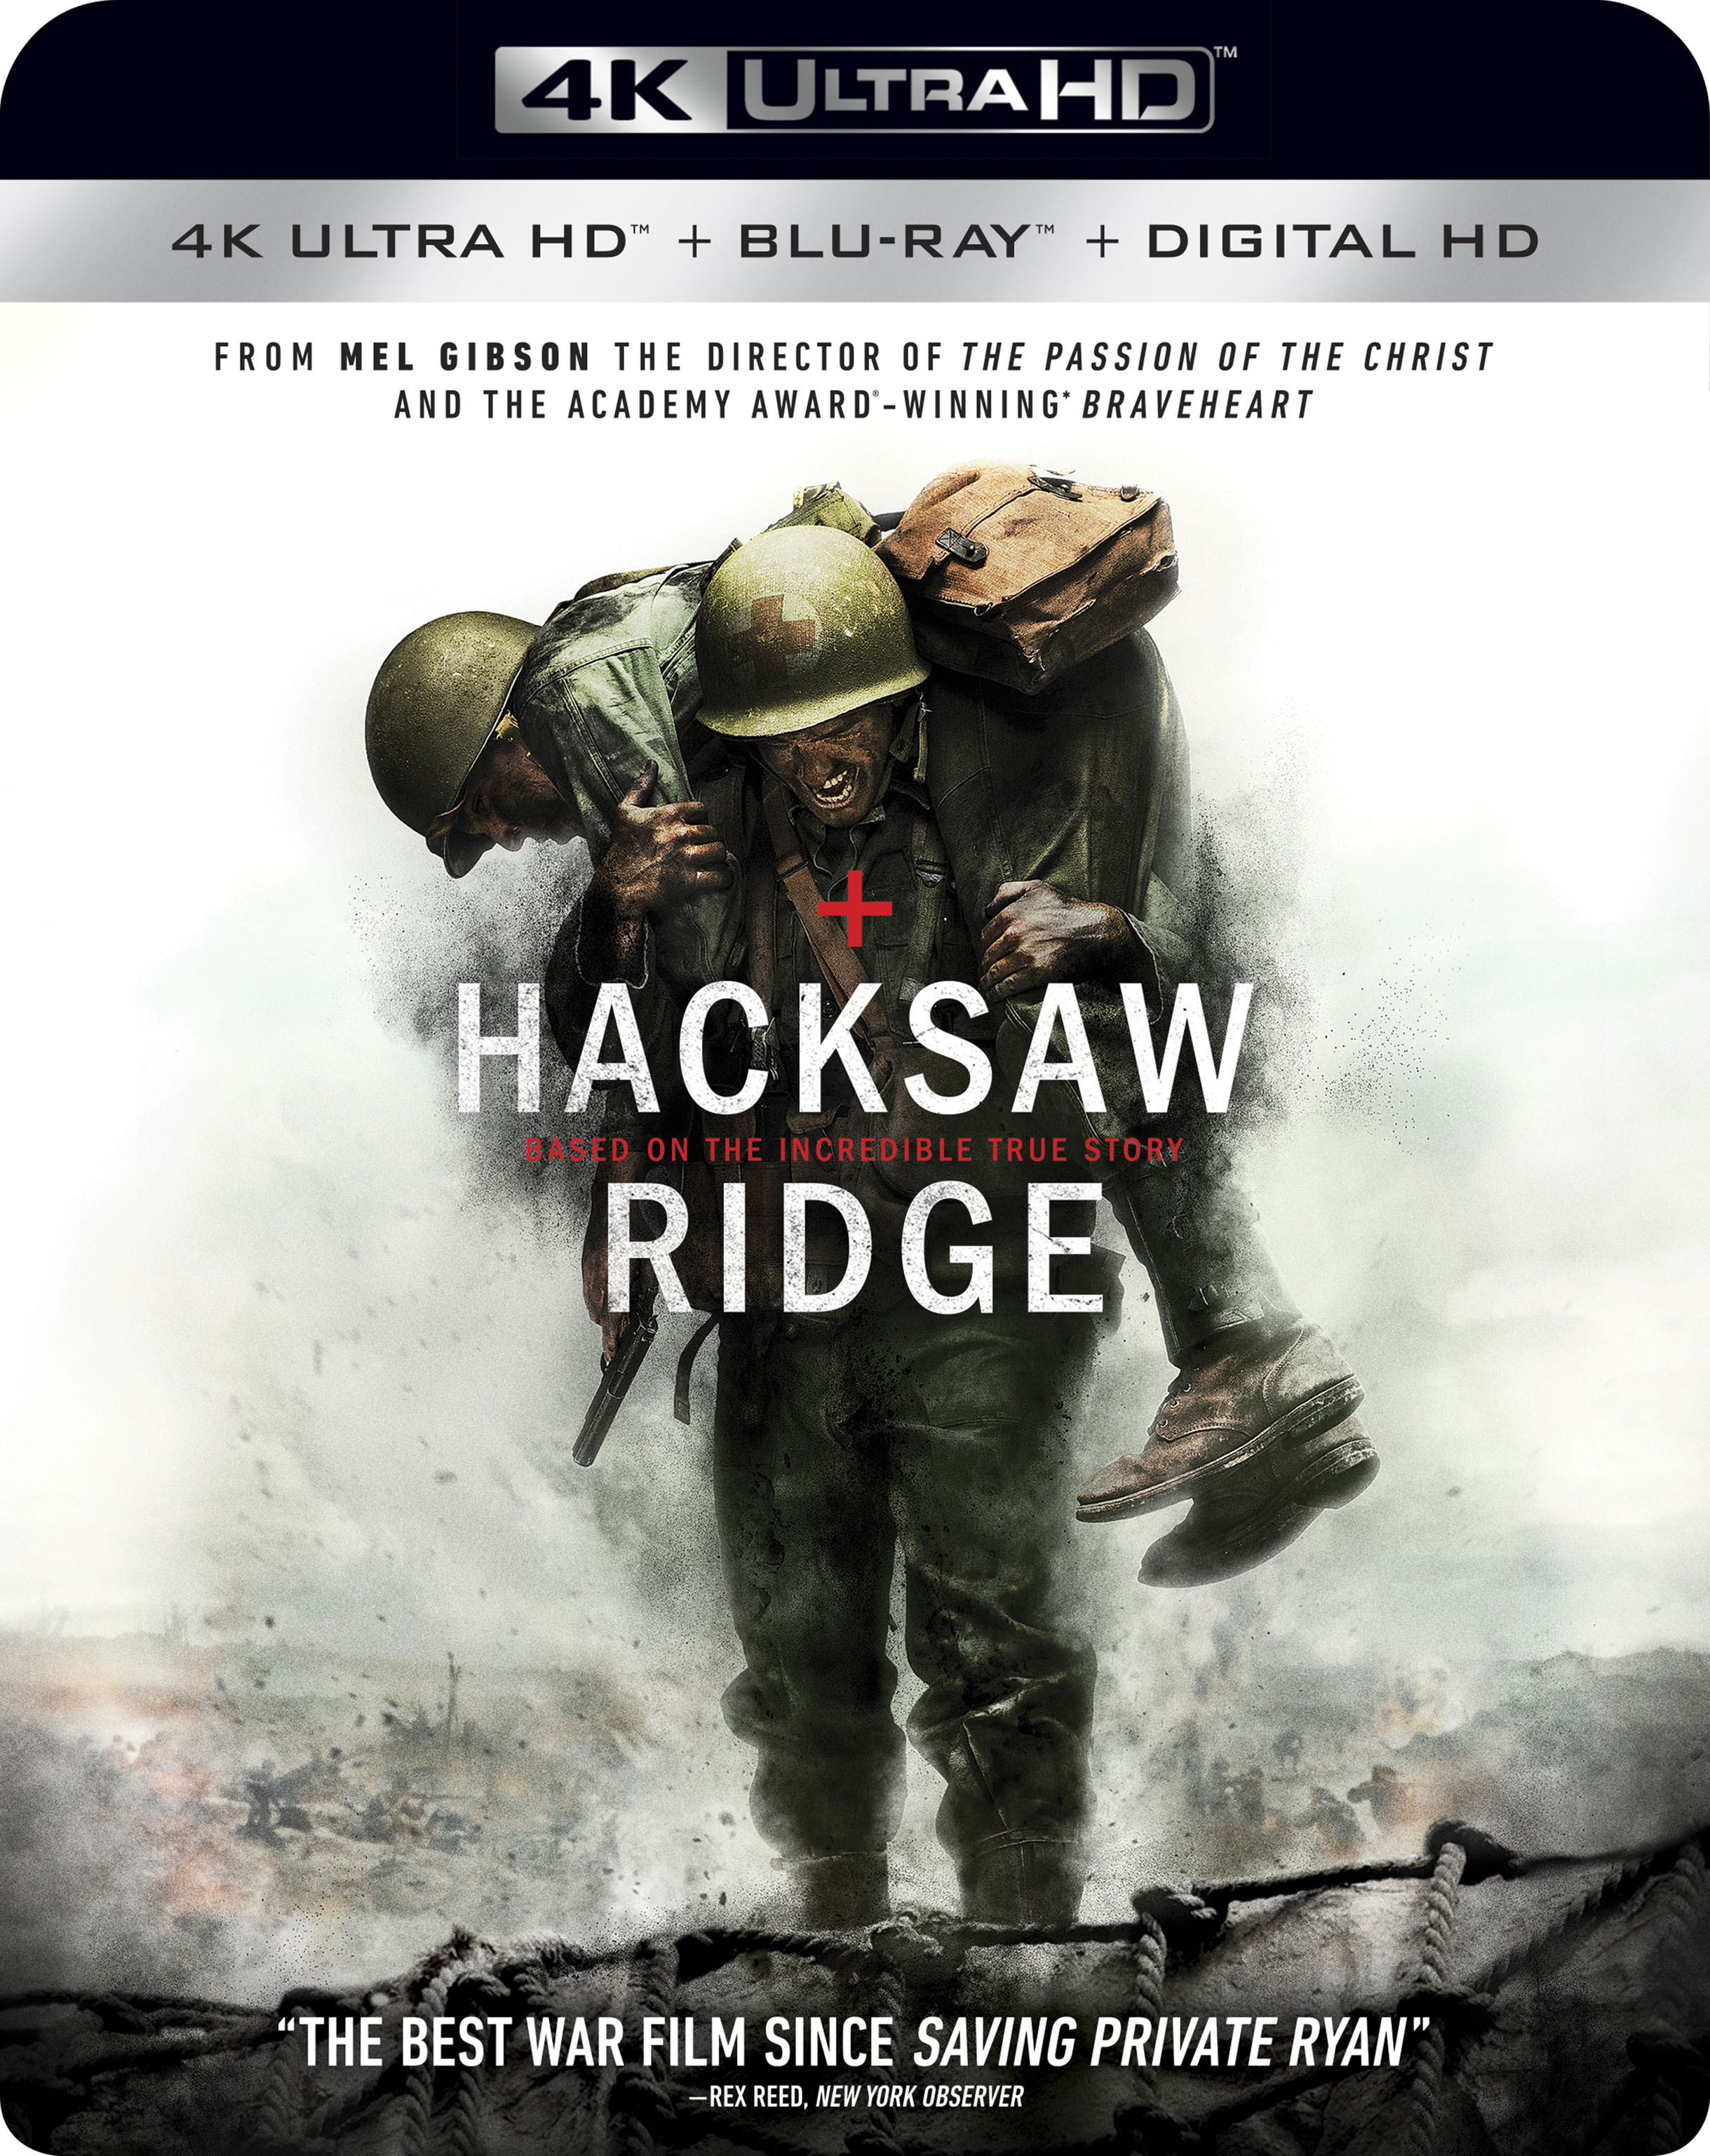 Hacksaw Ridge (4K Ultra HD + Blu-ray) - UHD [ 2016 ]  - Drama Movies On 4K Ultra HD Blu-ray - Movies On GRUV